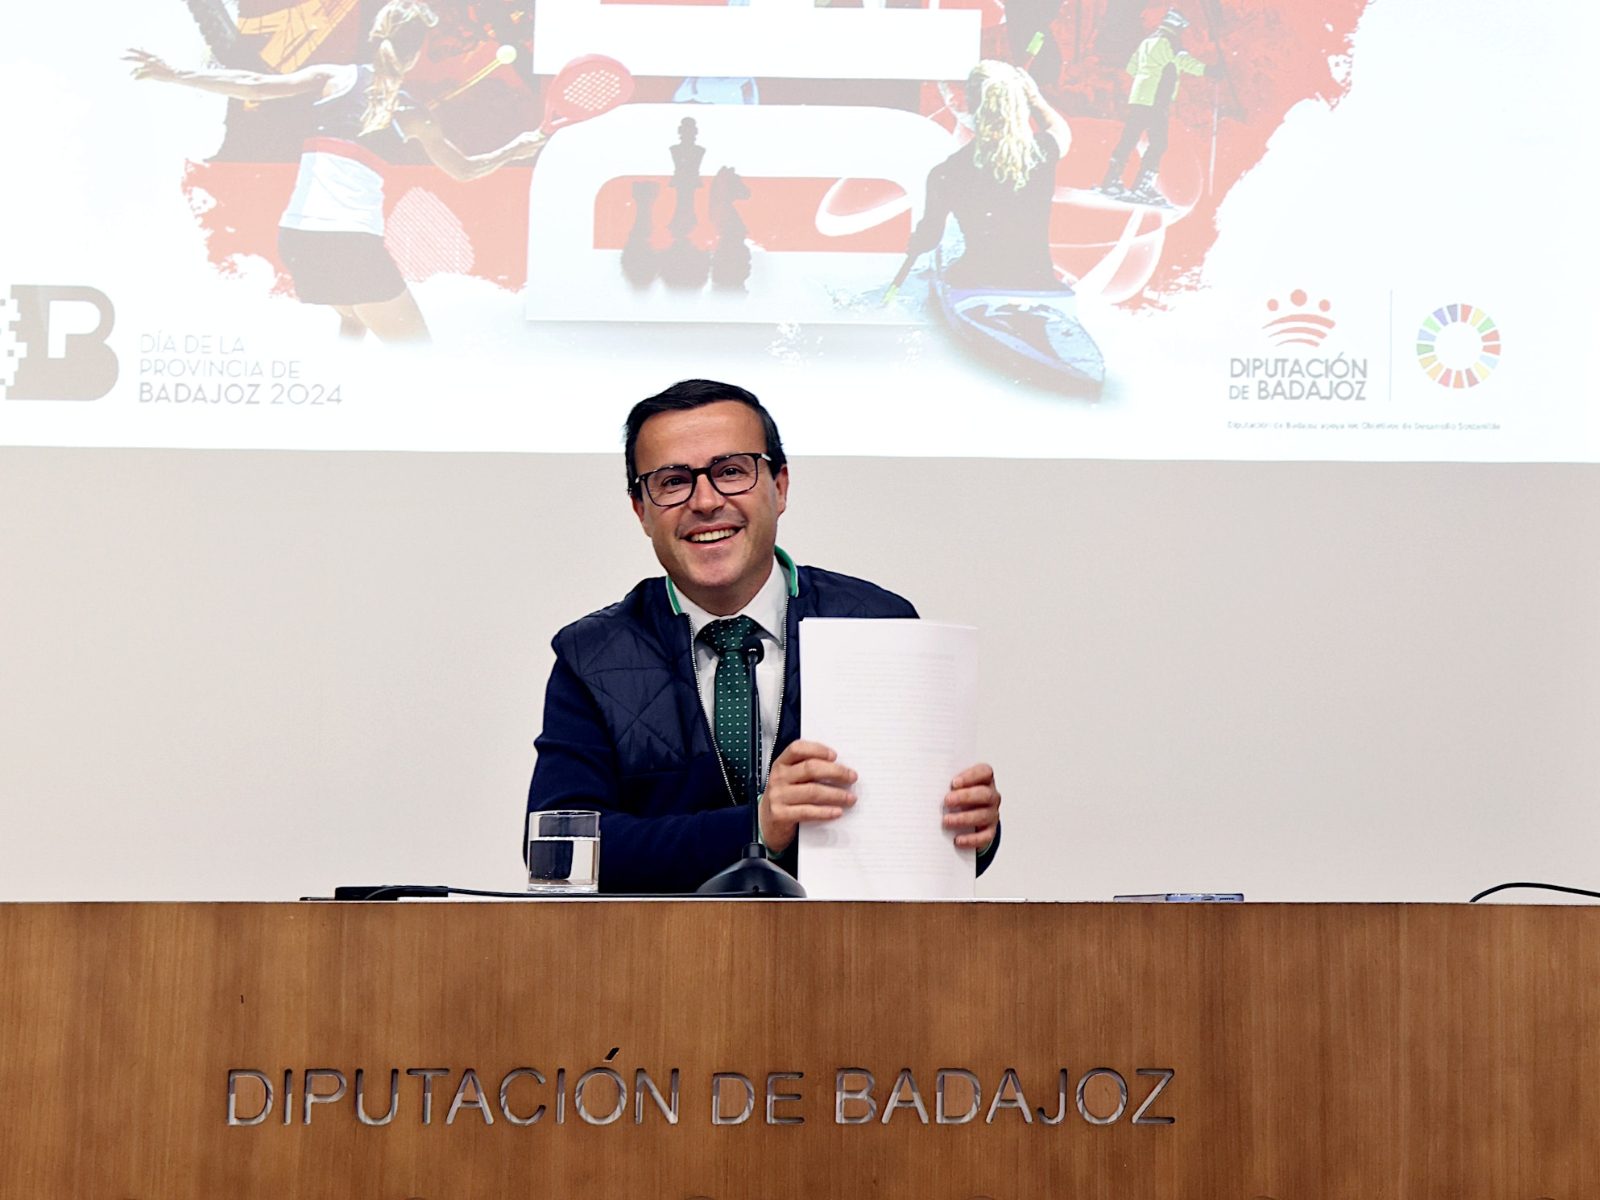 La Diputación de Badajoz concede la Medalla de Oro de la provincia a Juan Carmona y el Premio de la Provincia a Inquiba